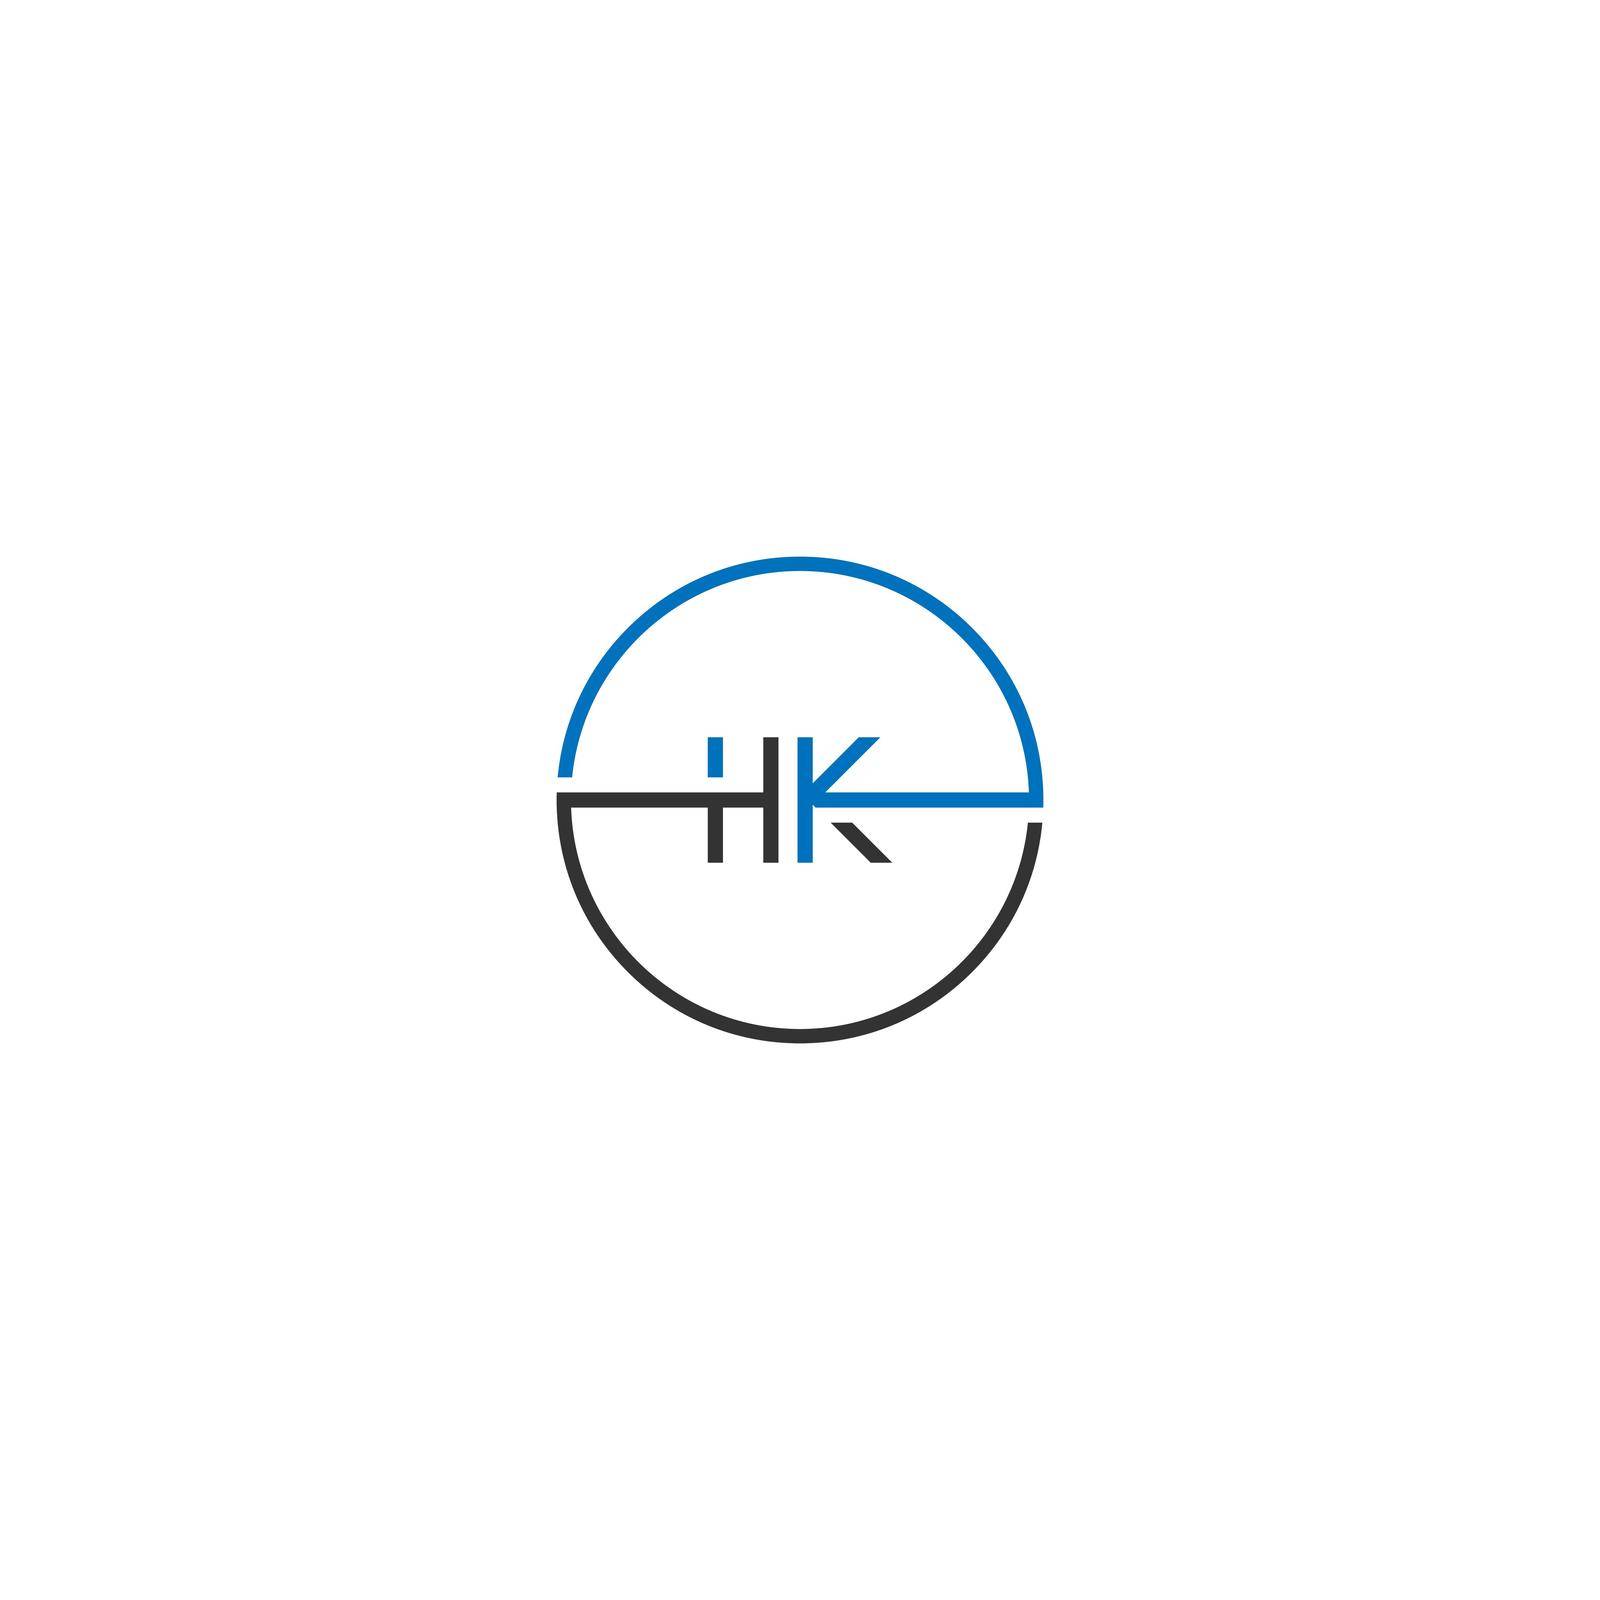 HK logo letter design concept in black and blue color